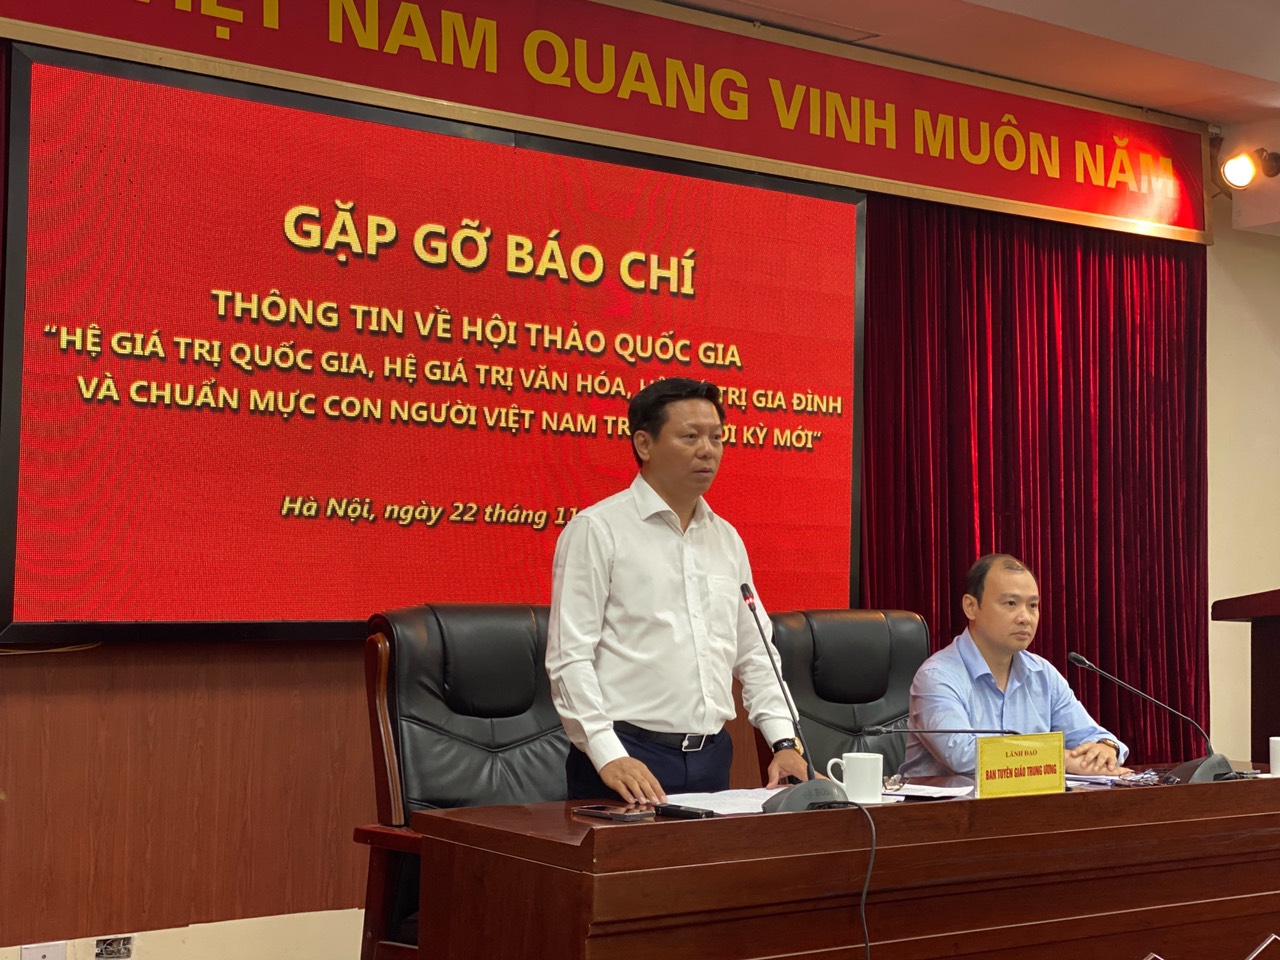 Thu nhặt những "viên ngọc" để hoàn thiện 4 hệ giá trị của Việt Nam - 4